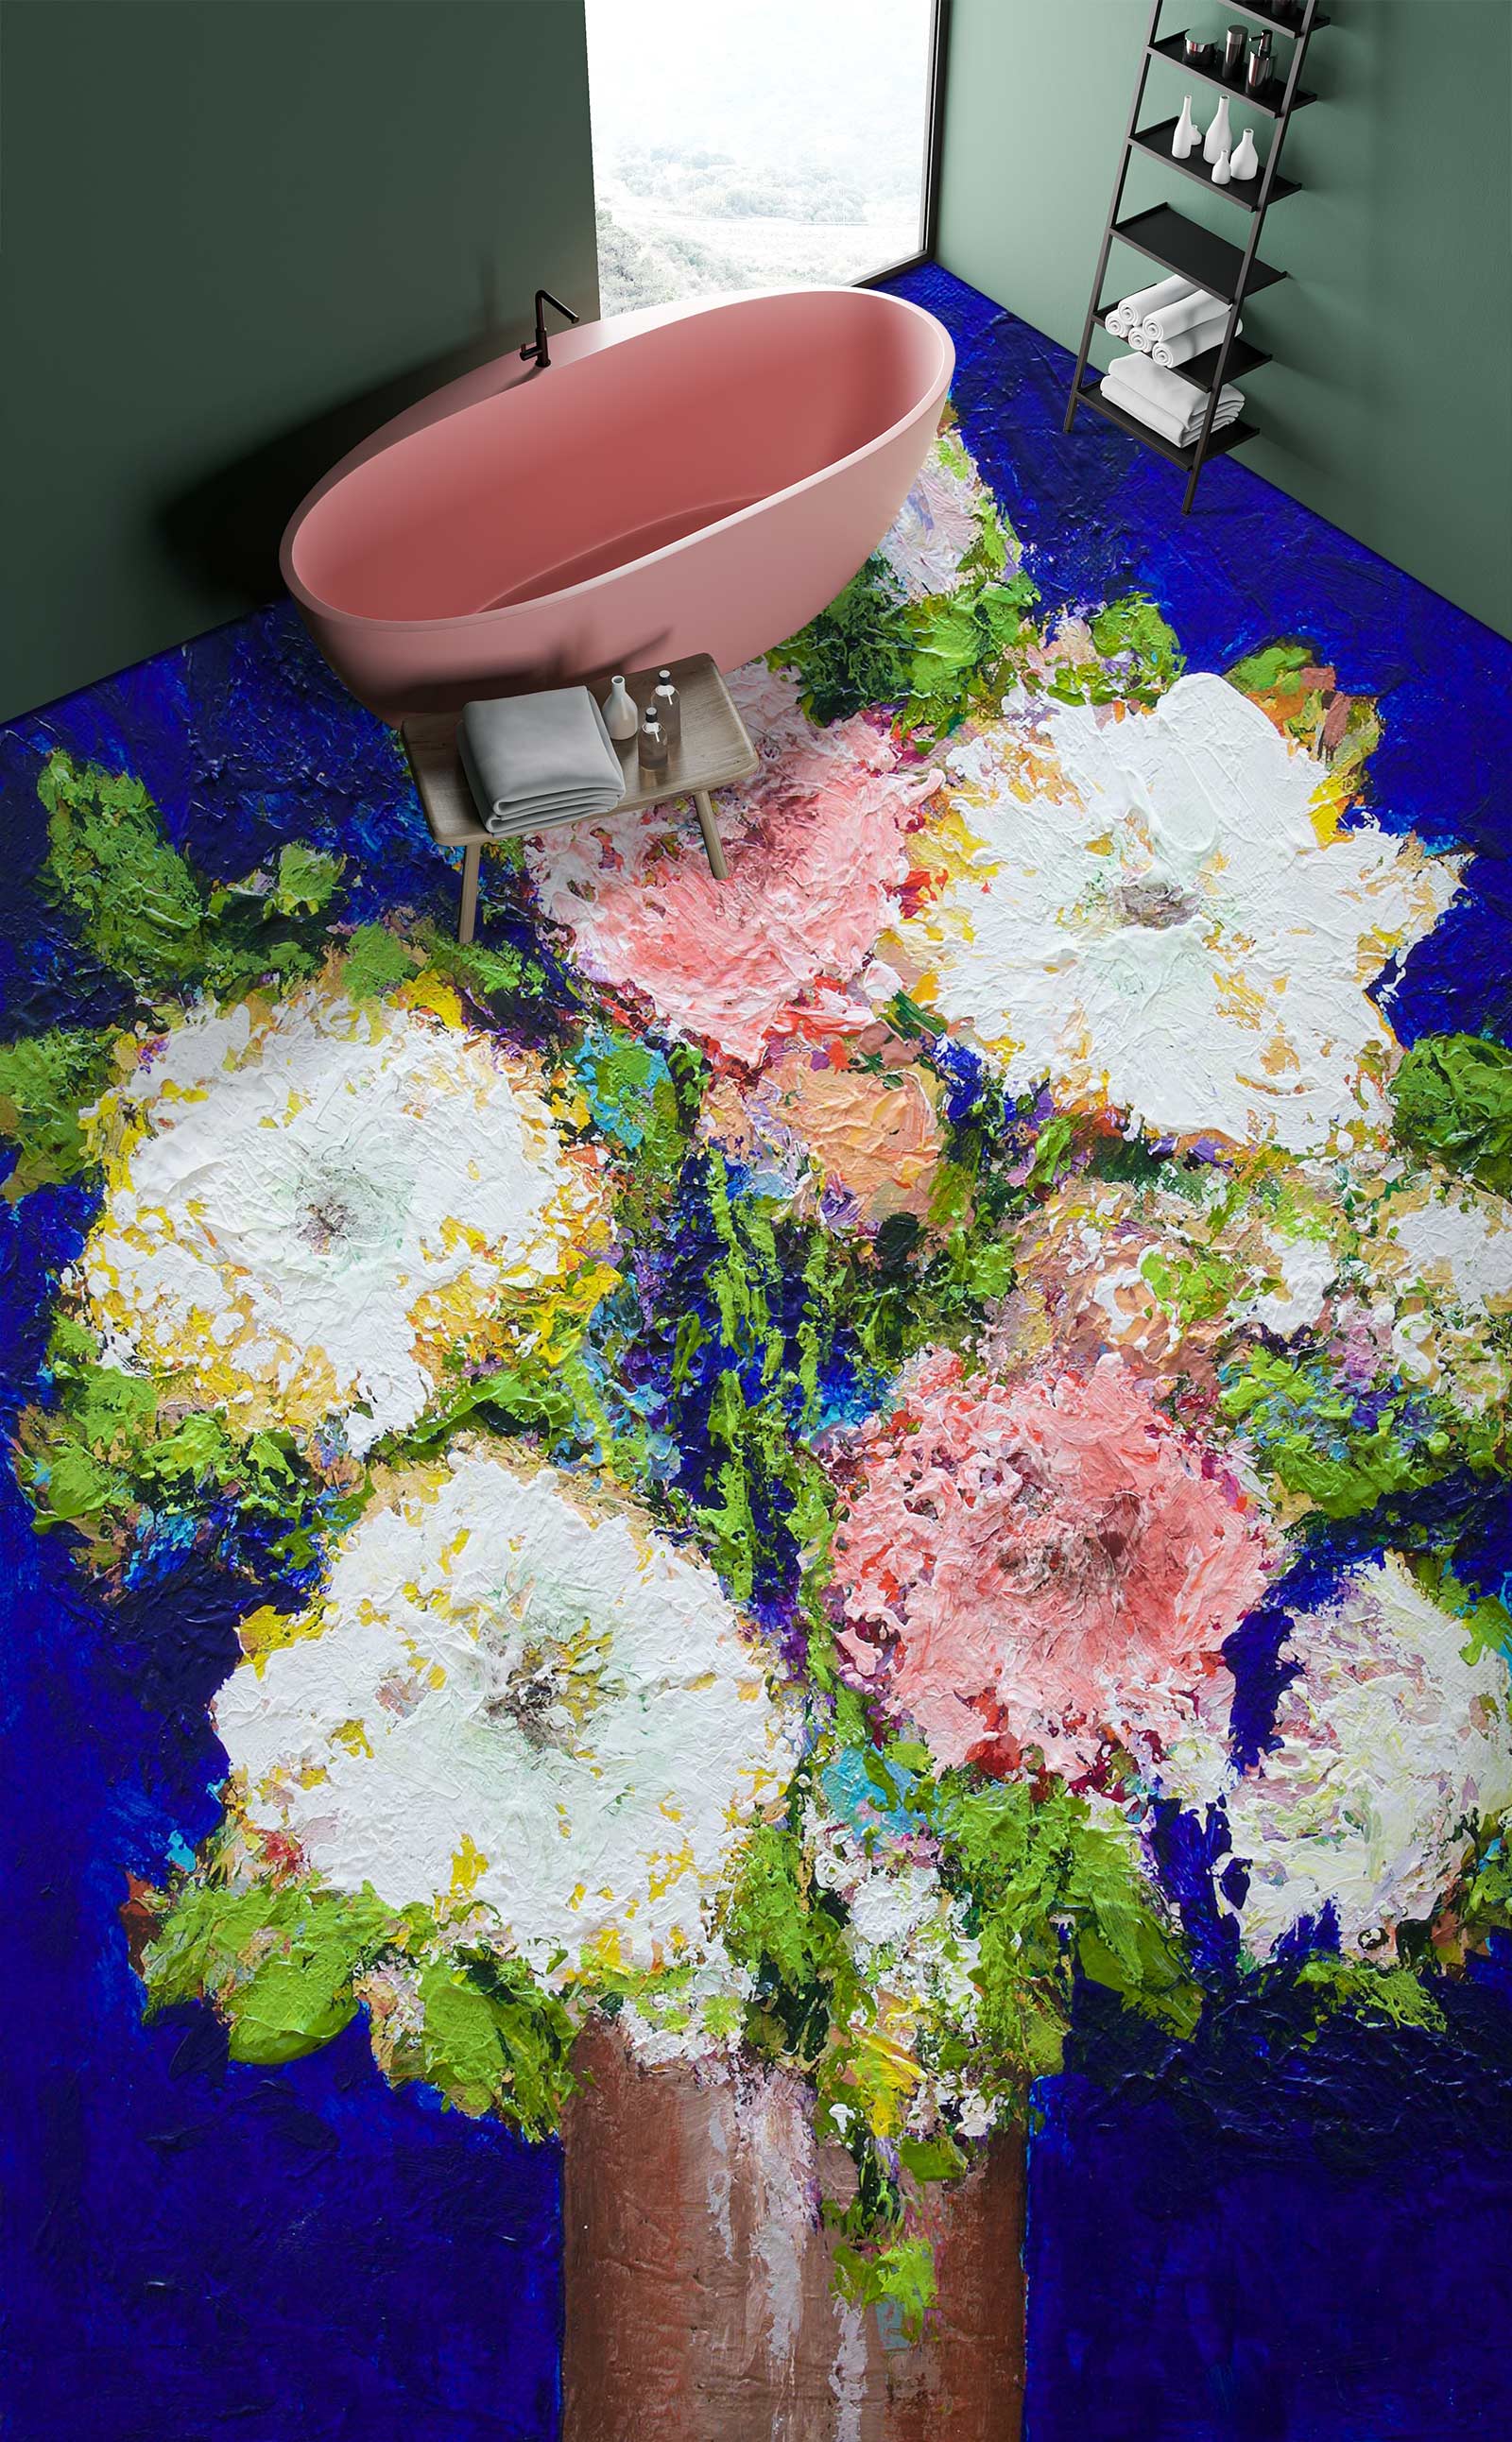 3D Flowers Vase Painting 9698 Allan P. Friedlander Floor Mural